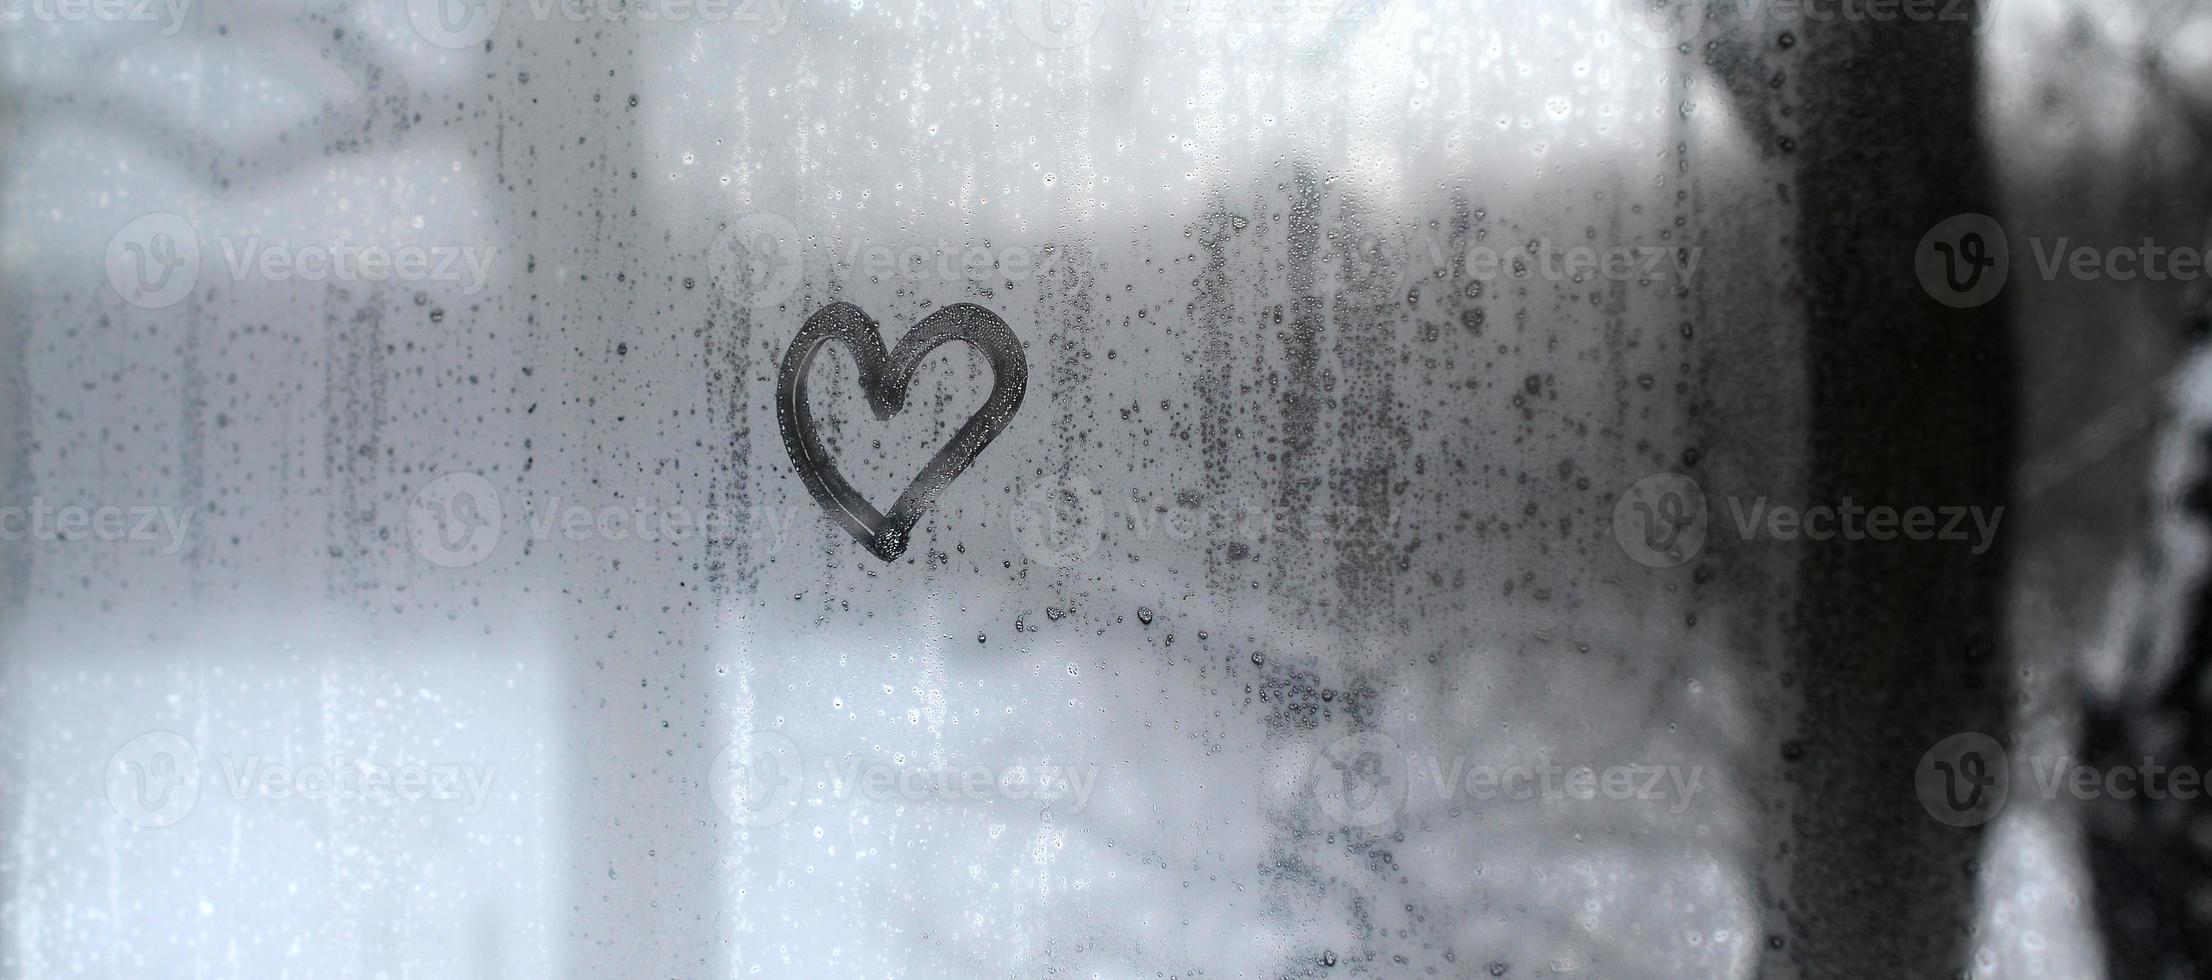 de hjärta är målad på de dimma glas i de vinter- foto